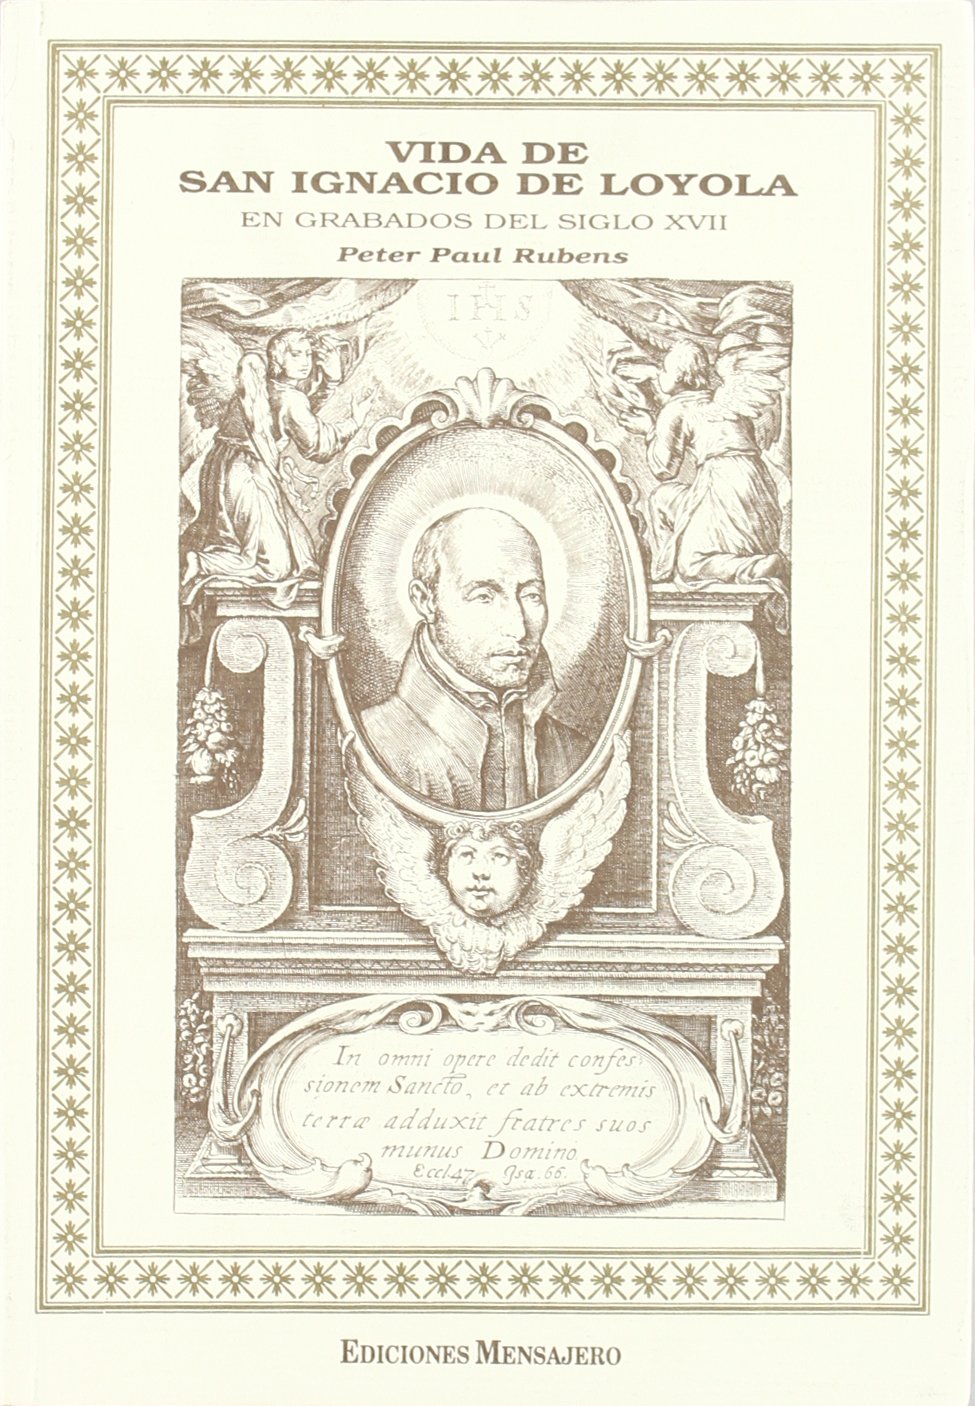 Imagen de portada del libro Vida de San Ignacio de Loyola en grabados del siglo XVII